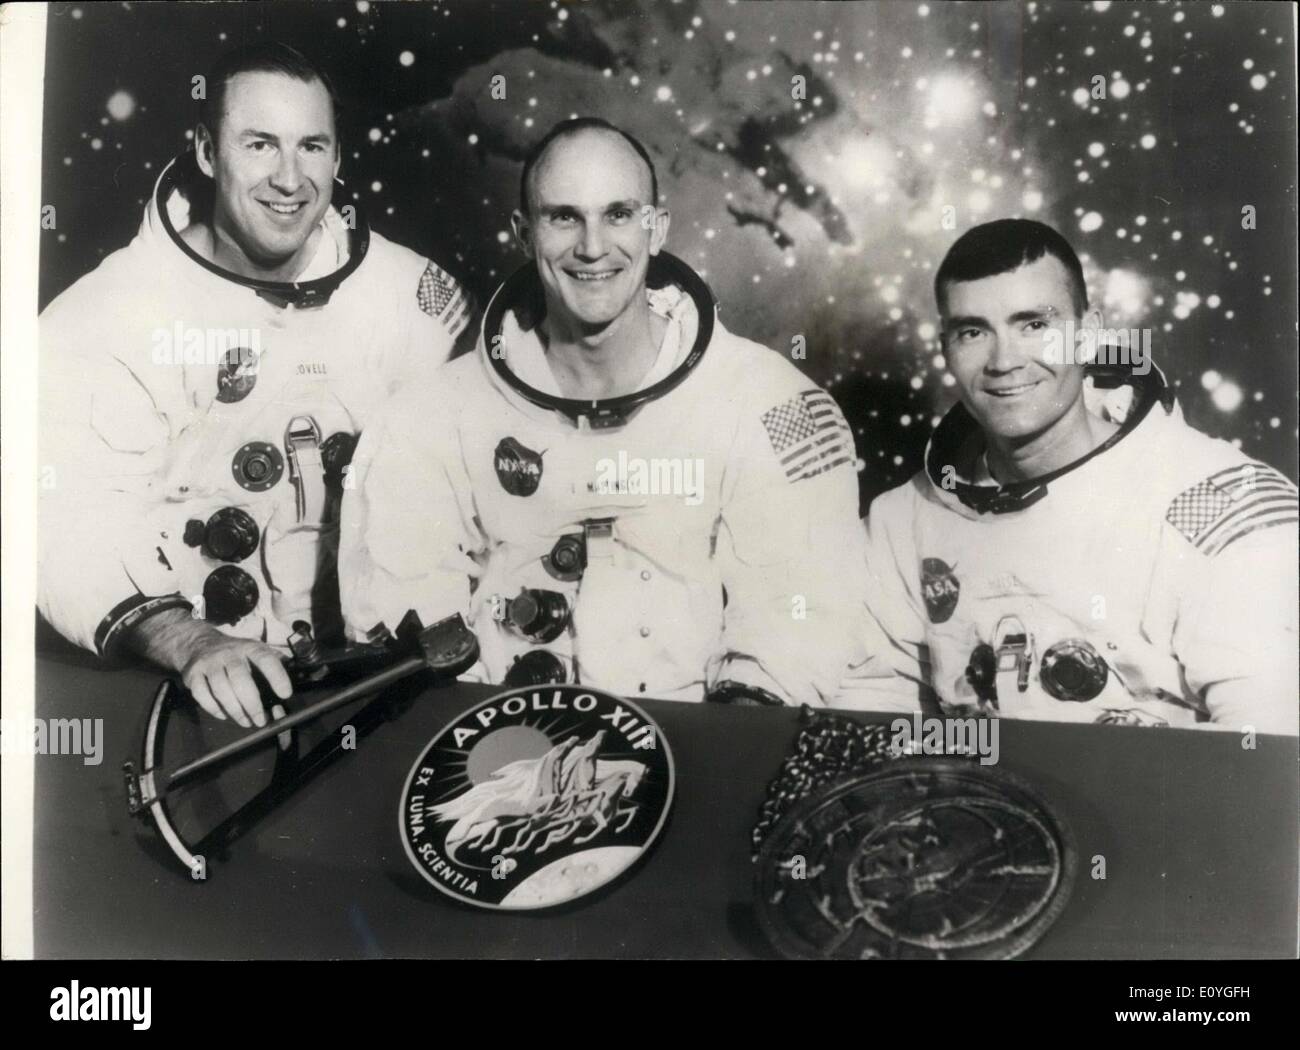 Apr. 11, 1970 - Settimo manned Apollo equipaggio: i membri del primo equipaggio dell'Apollo 13 atterraggio lunare di missione sono (l a r), gli astronauti James A. Lovell; Thomas K. Mattingly, e Fred W. Haise. Essi sono seduti davanti ad una scena della nebulosa laguna, con le insegne della missione e due elementi di inizio navigazione in primo piano. Rappresentato in Apollo 14 emblema (centro) è Apollo, dio Sole della mitologia greca, a simboleggiare che i voli Apollo hanno esteso la luce della conoscenza per tutti gli uomini Foto Stock